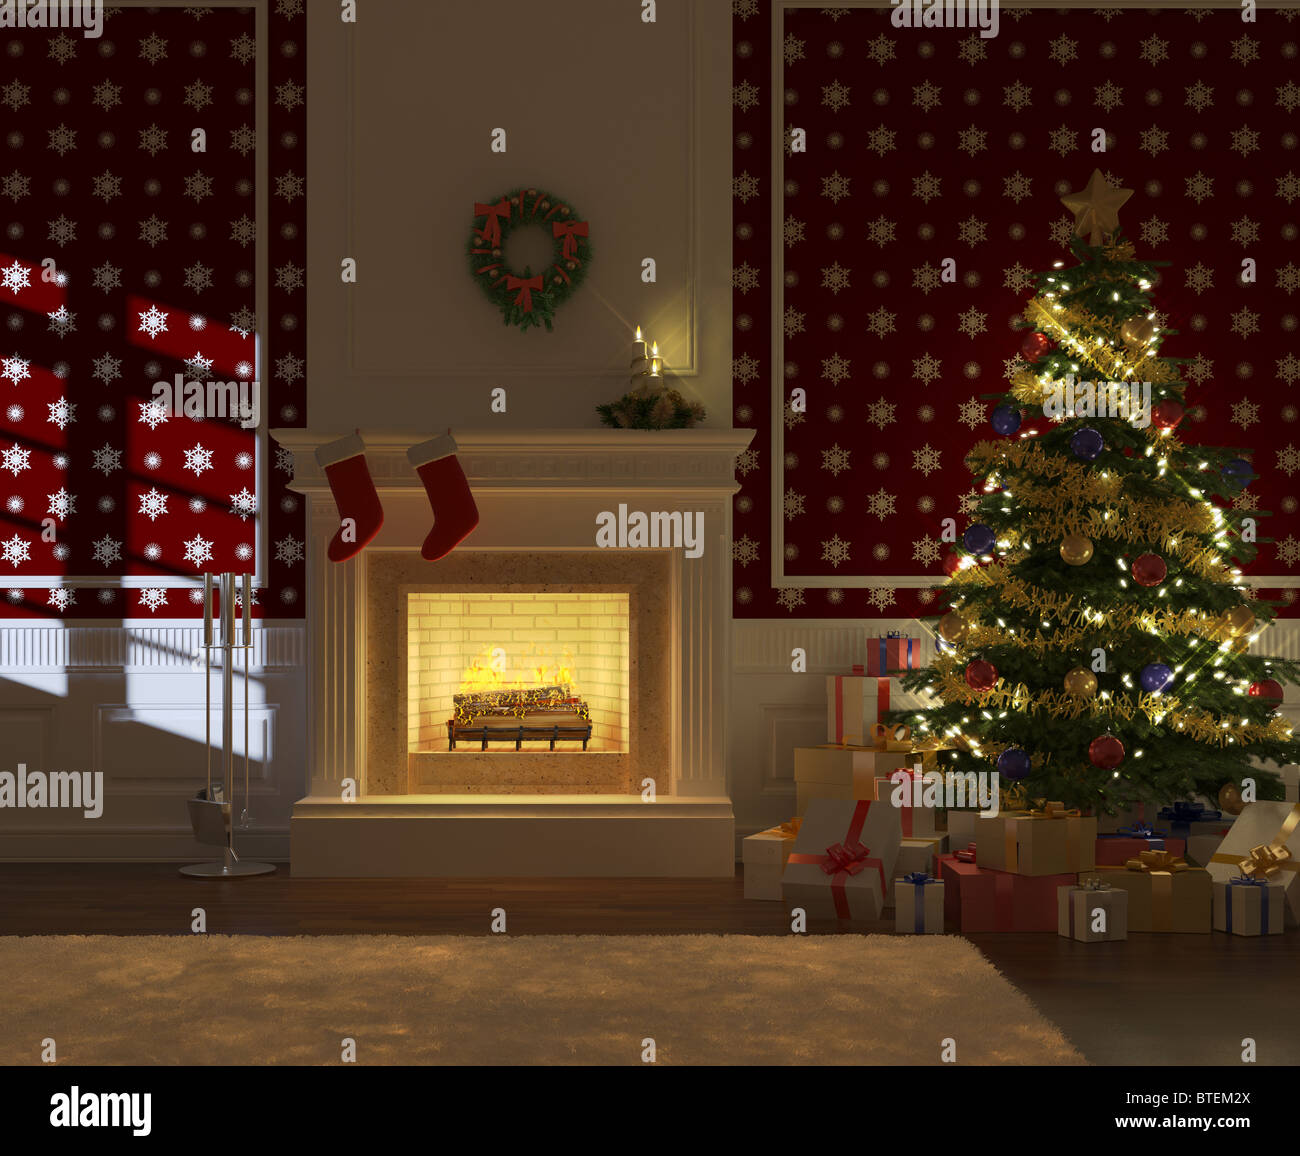 gemütlich dekoriert Weihnachten Kamin in der Nacht mit Baum und präsentiert Frontalansicht Stockfoto